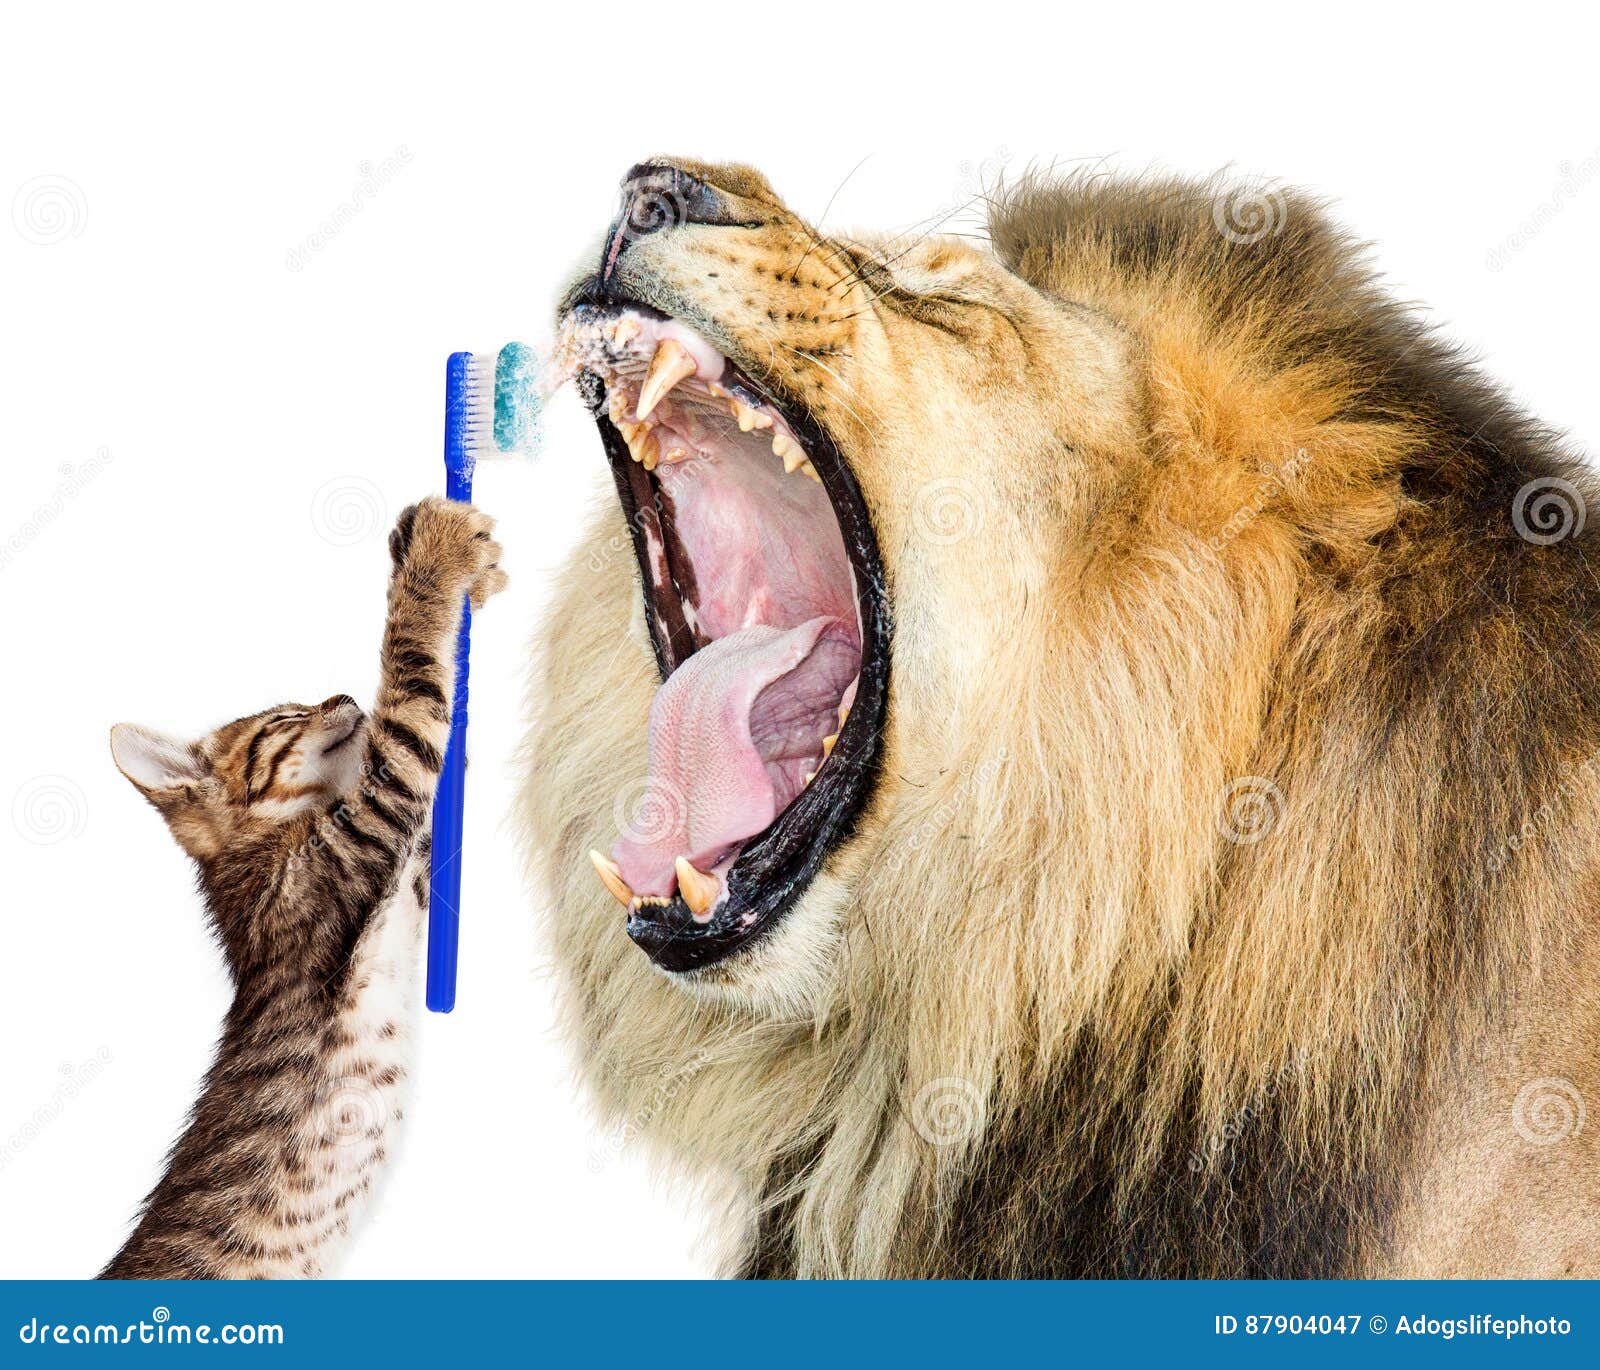 cat brushing lion`s teeth